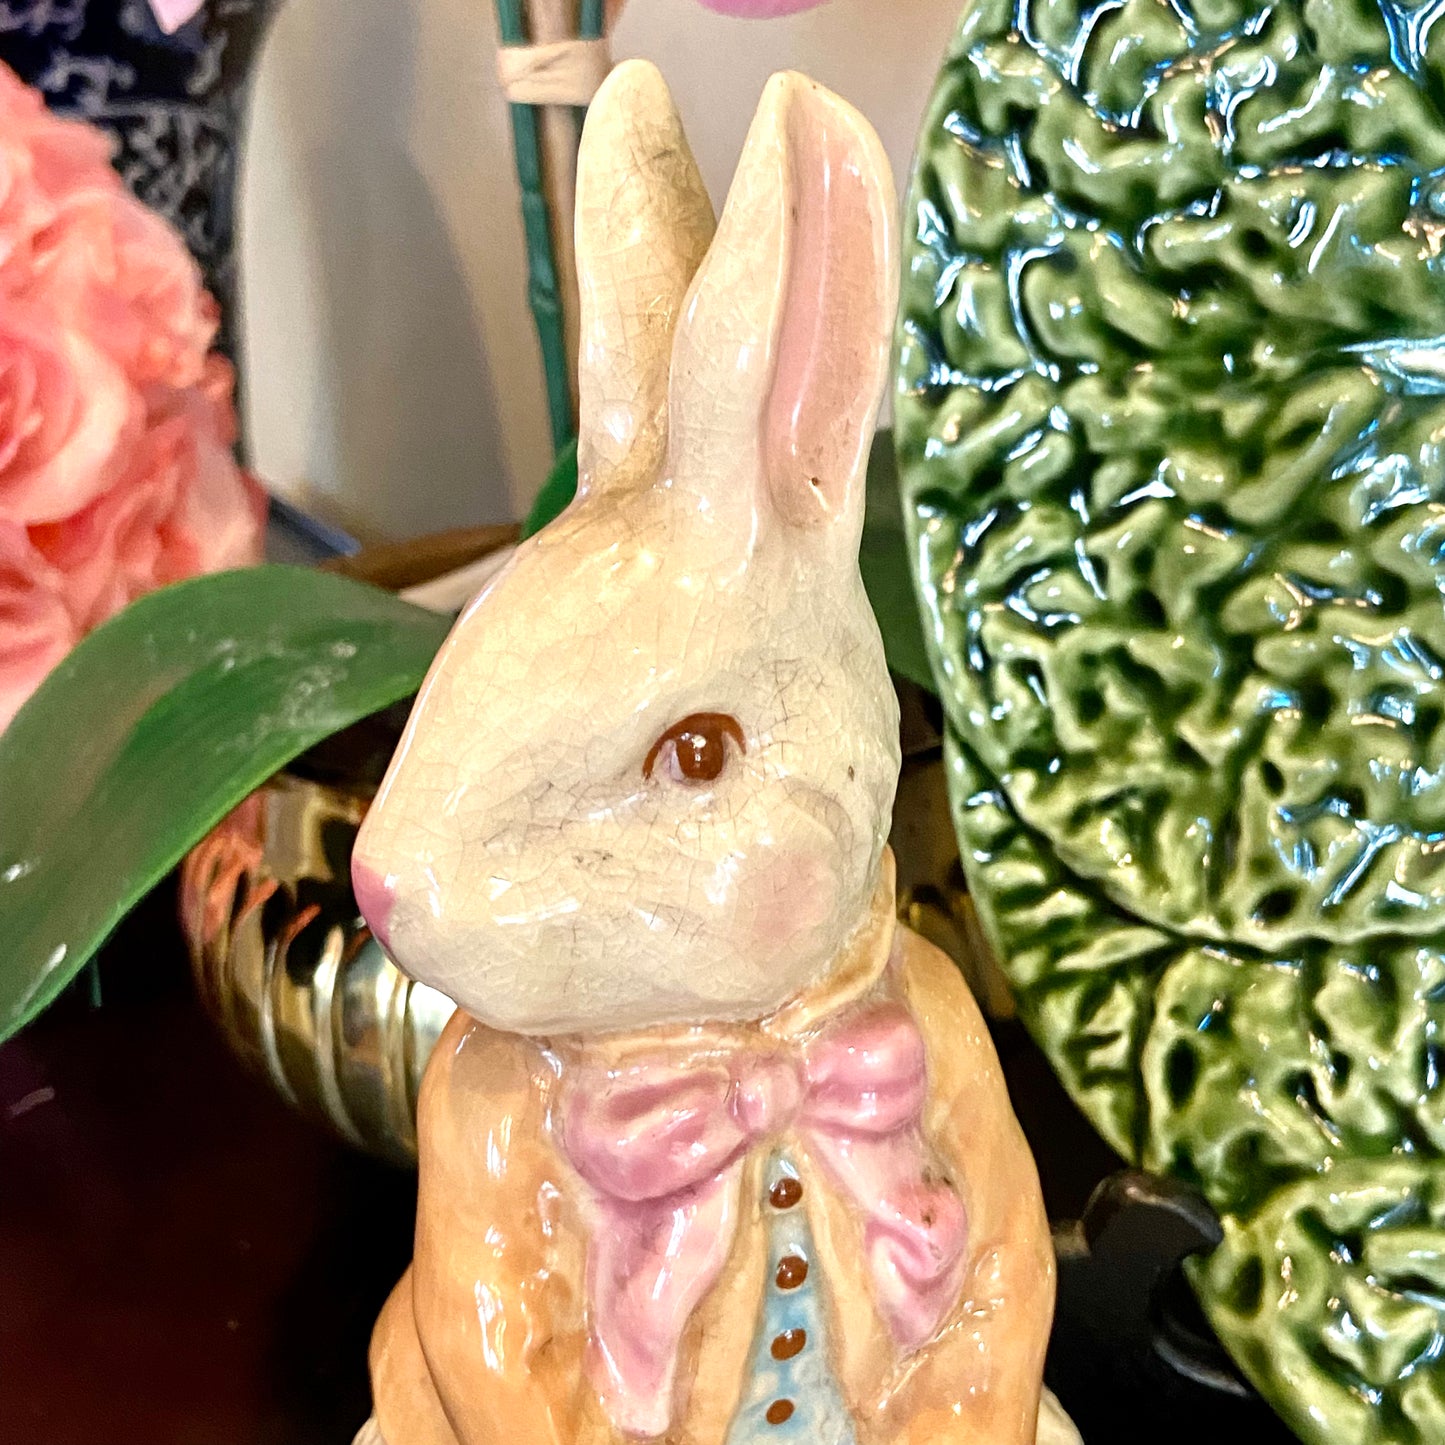 Vintage bunny rabbit in a bow tie ceramic planter